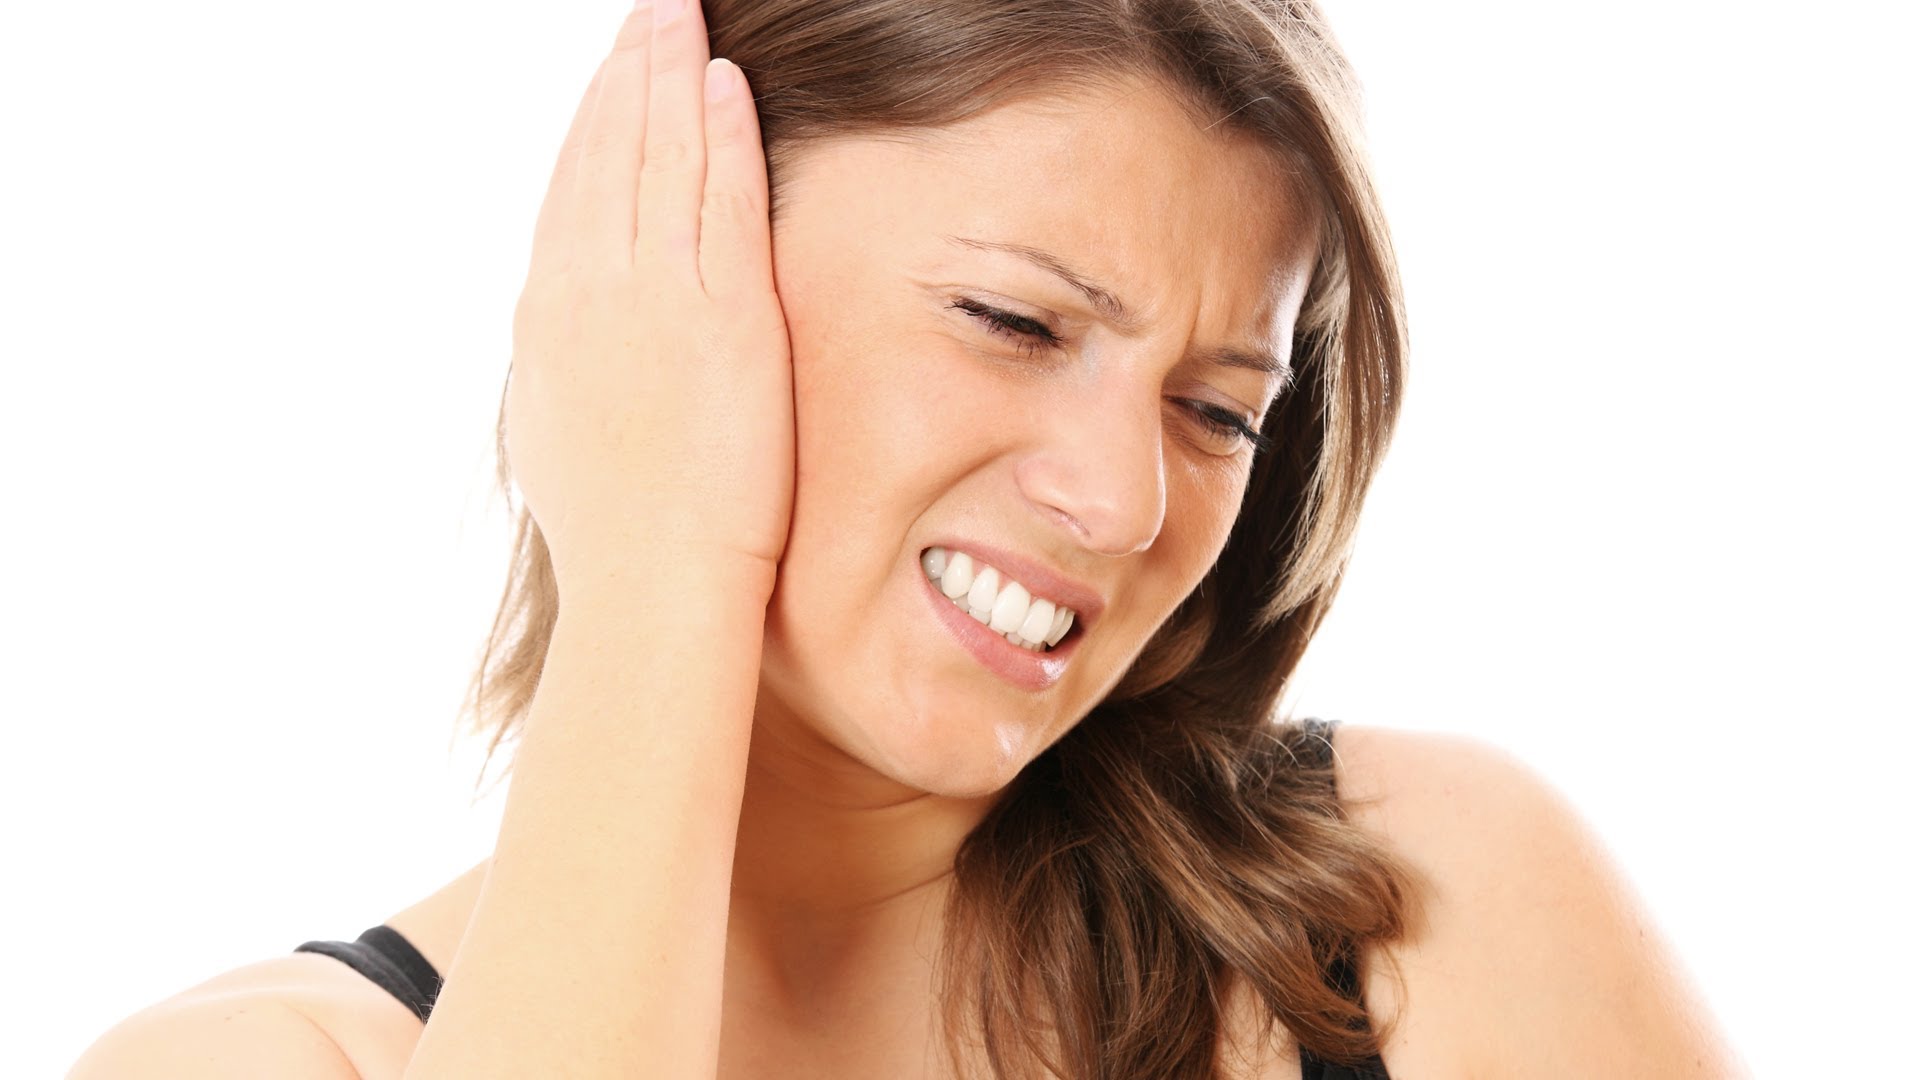 Πόνος στο αυτί – Ωτίτιδα ή απλό κρυολόγημα; (βίντεο)